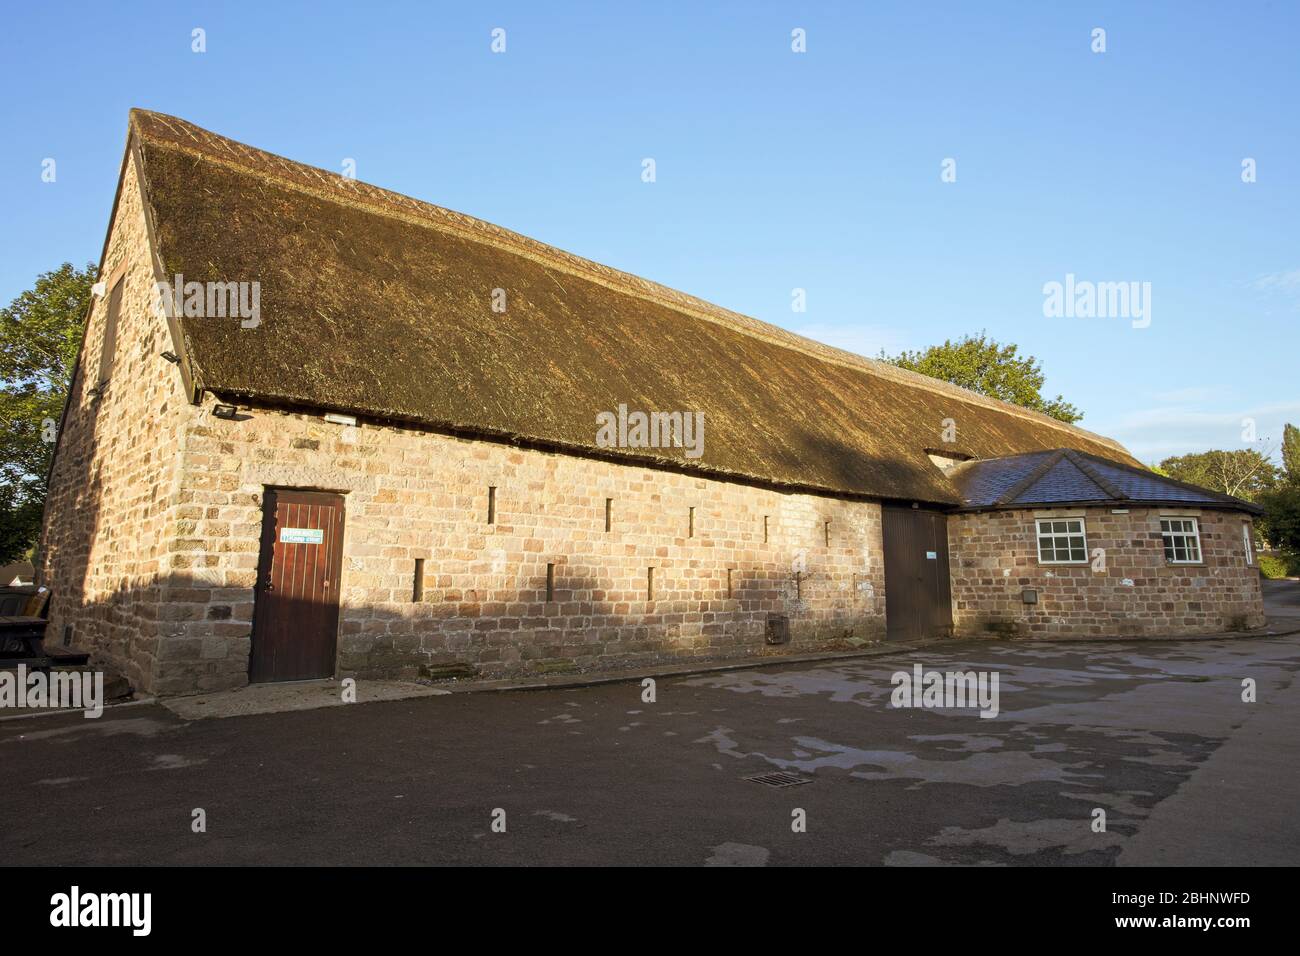 Le Barn manial du XIIIe siècle, Siffon, près de Rotherham, dans le Yorkshire du Sud, en Angleterre, au Royaume-Uni. Banque D'Images